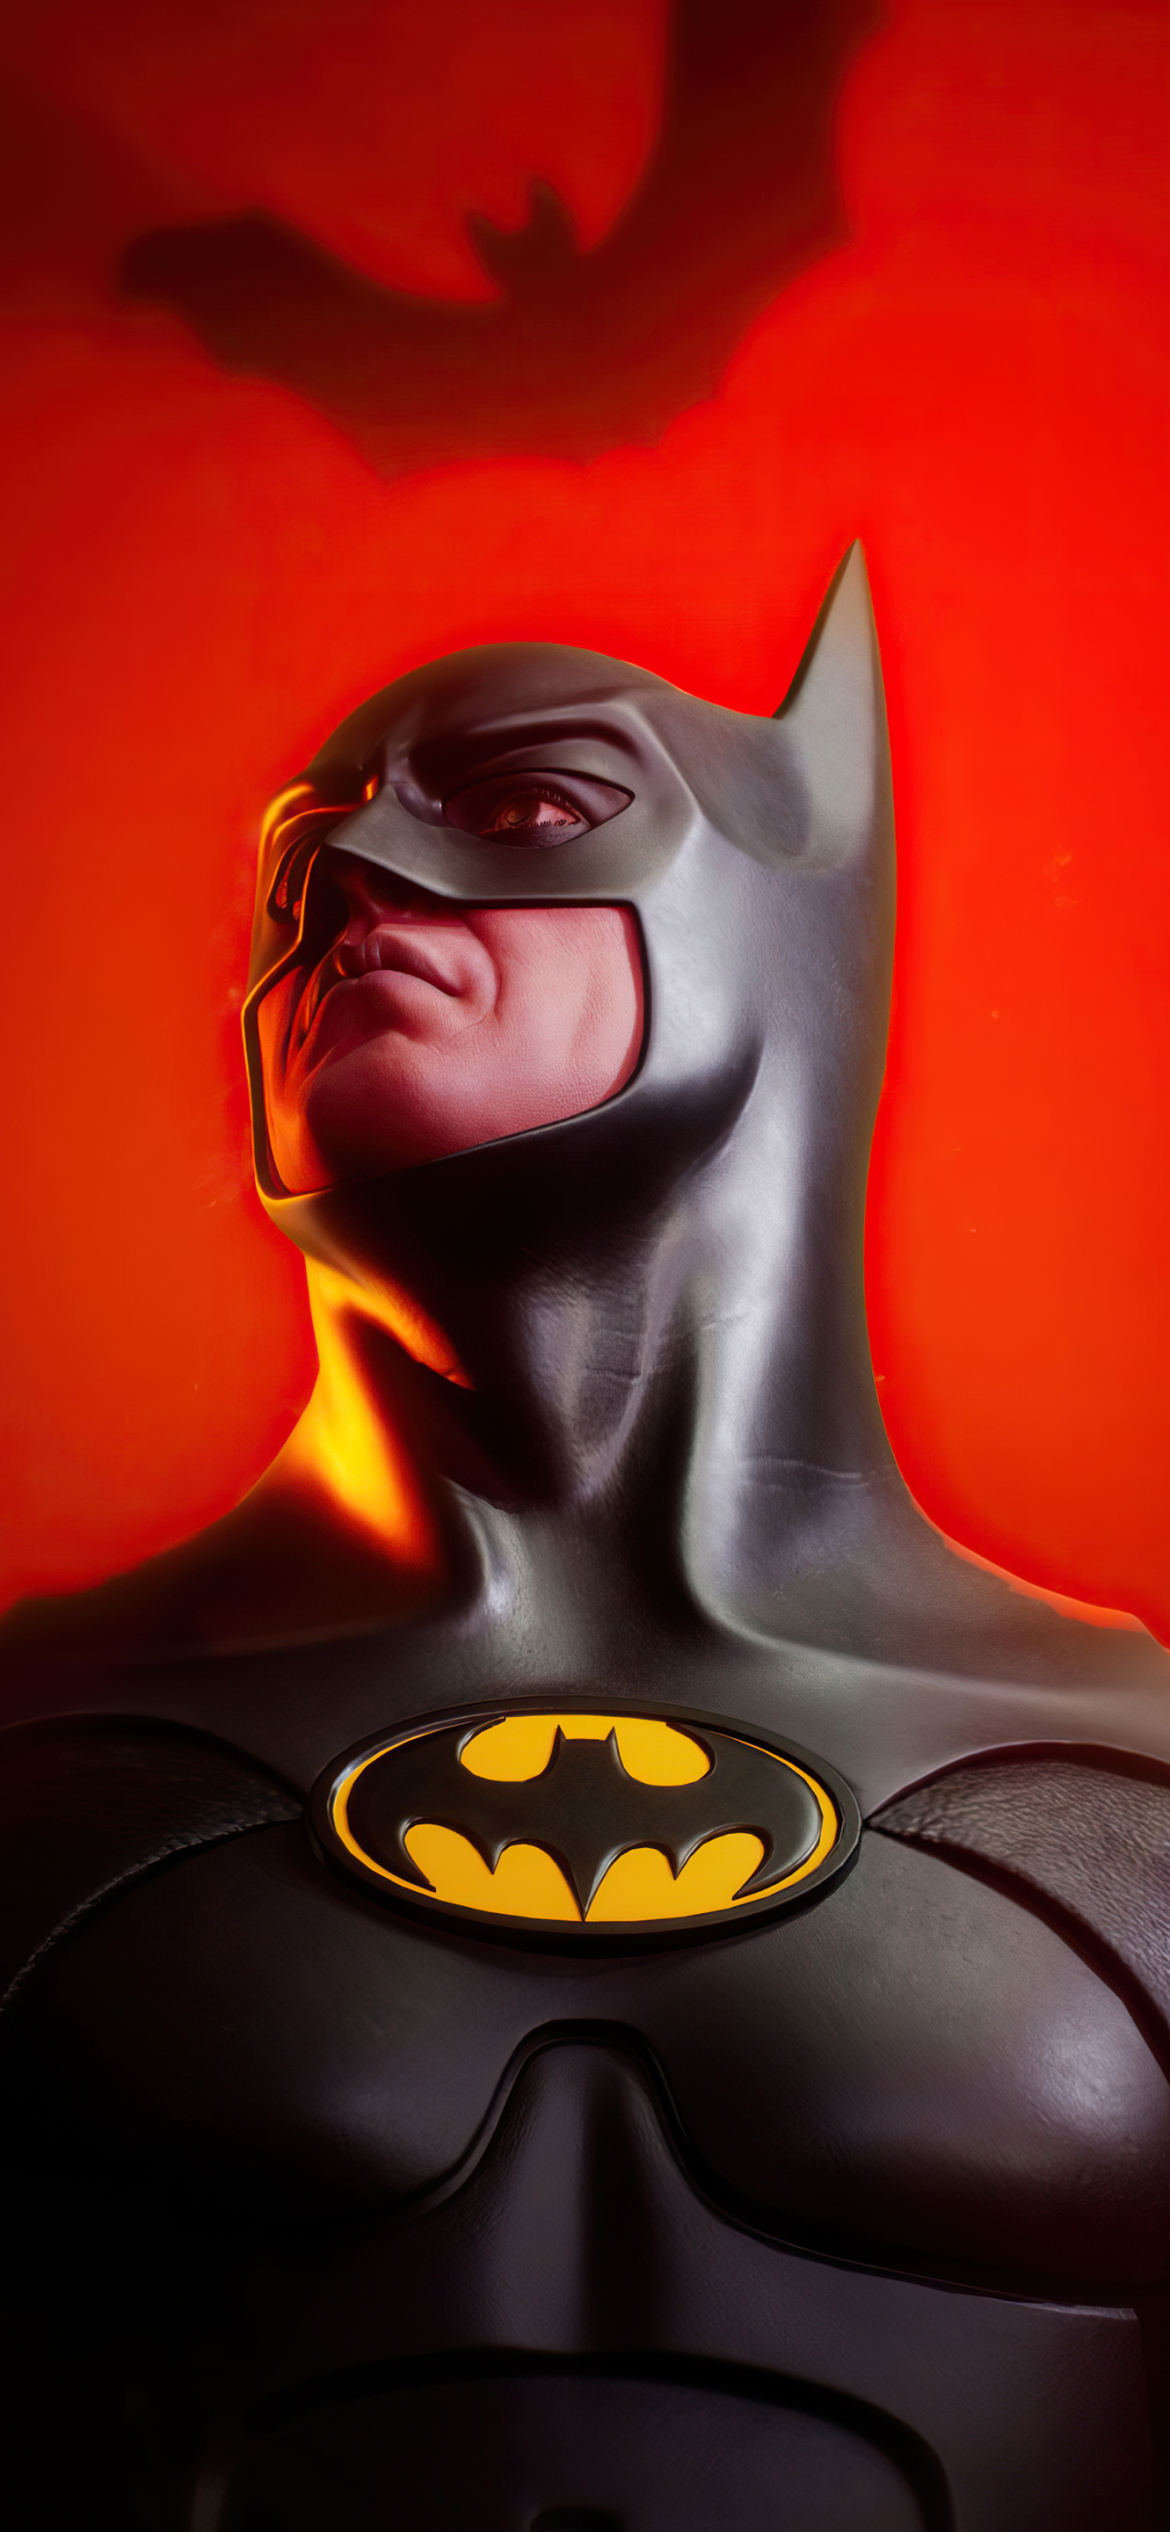 Descarga gratuita de fondo de pantalla para móvil de Películas, Dc Comics, Hombre Murciélago, Batman Vuelve.